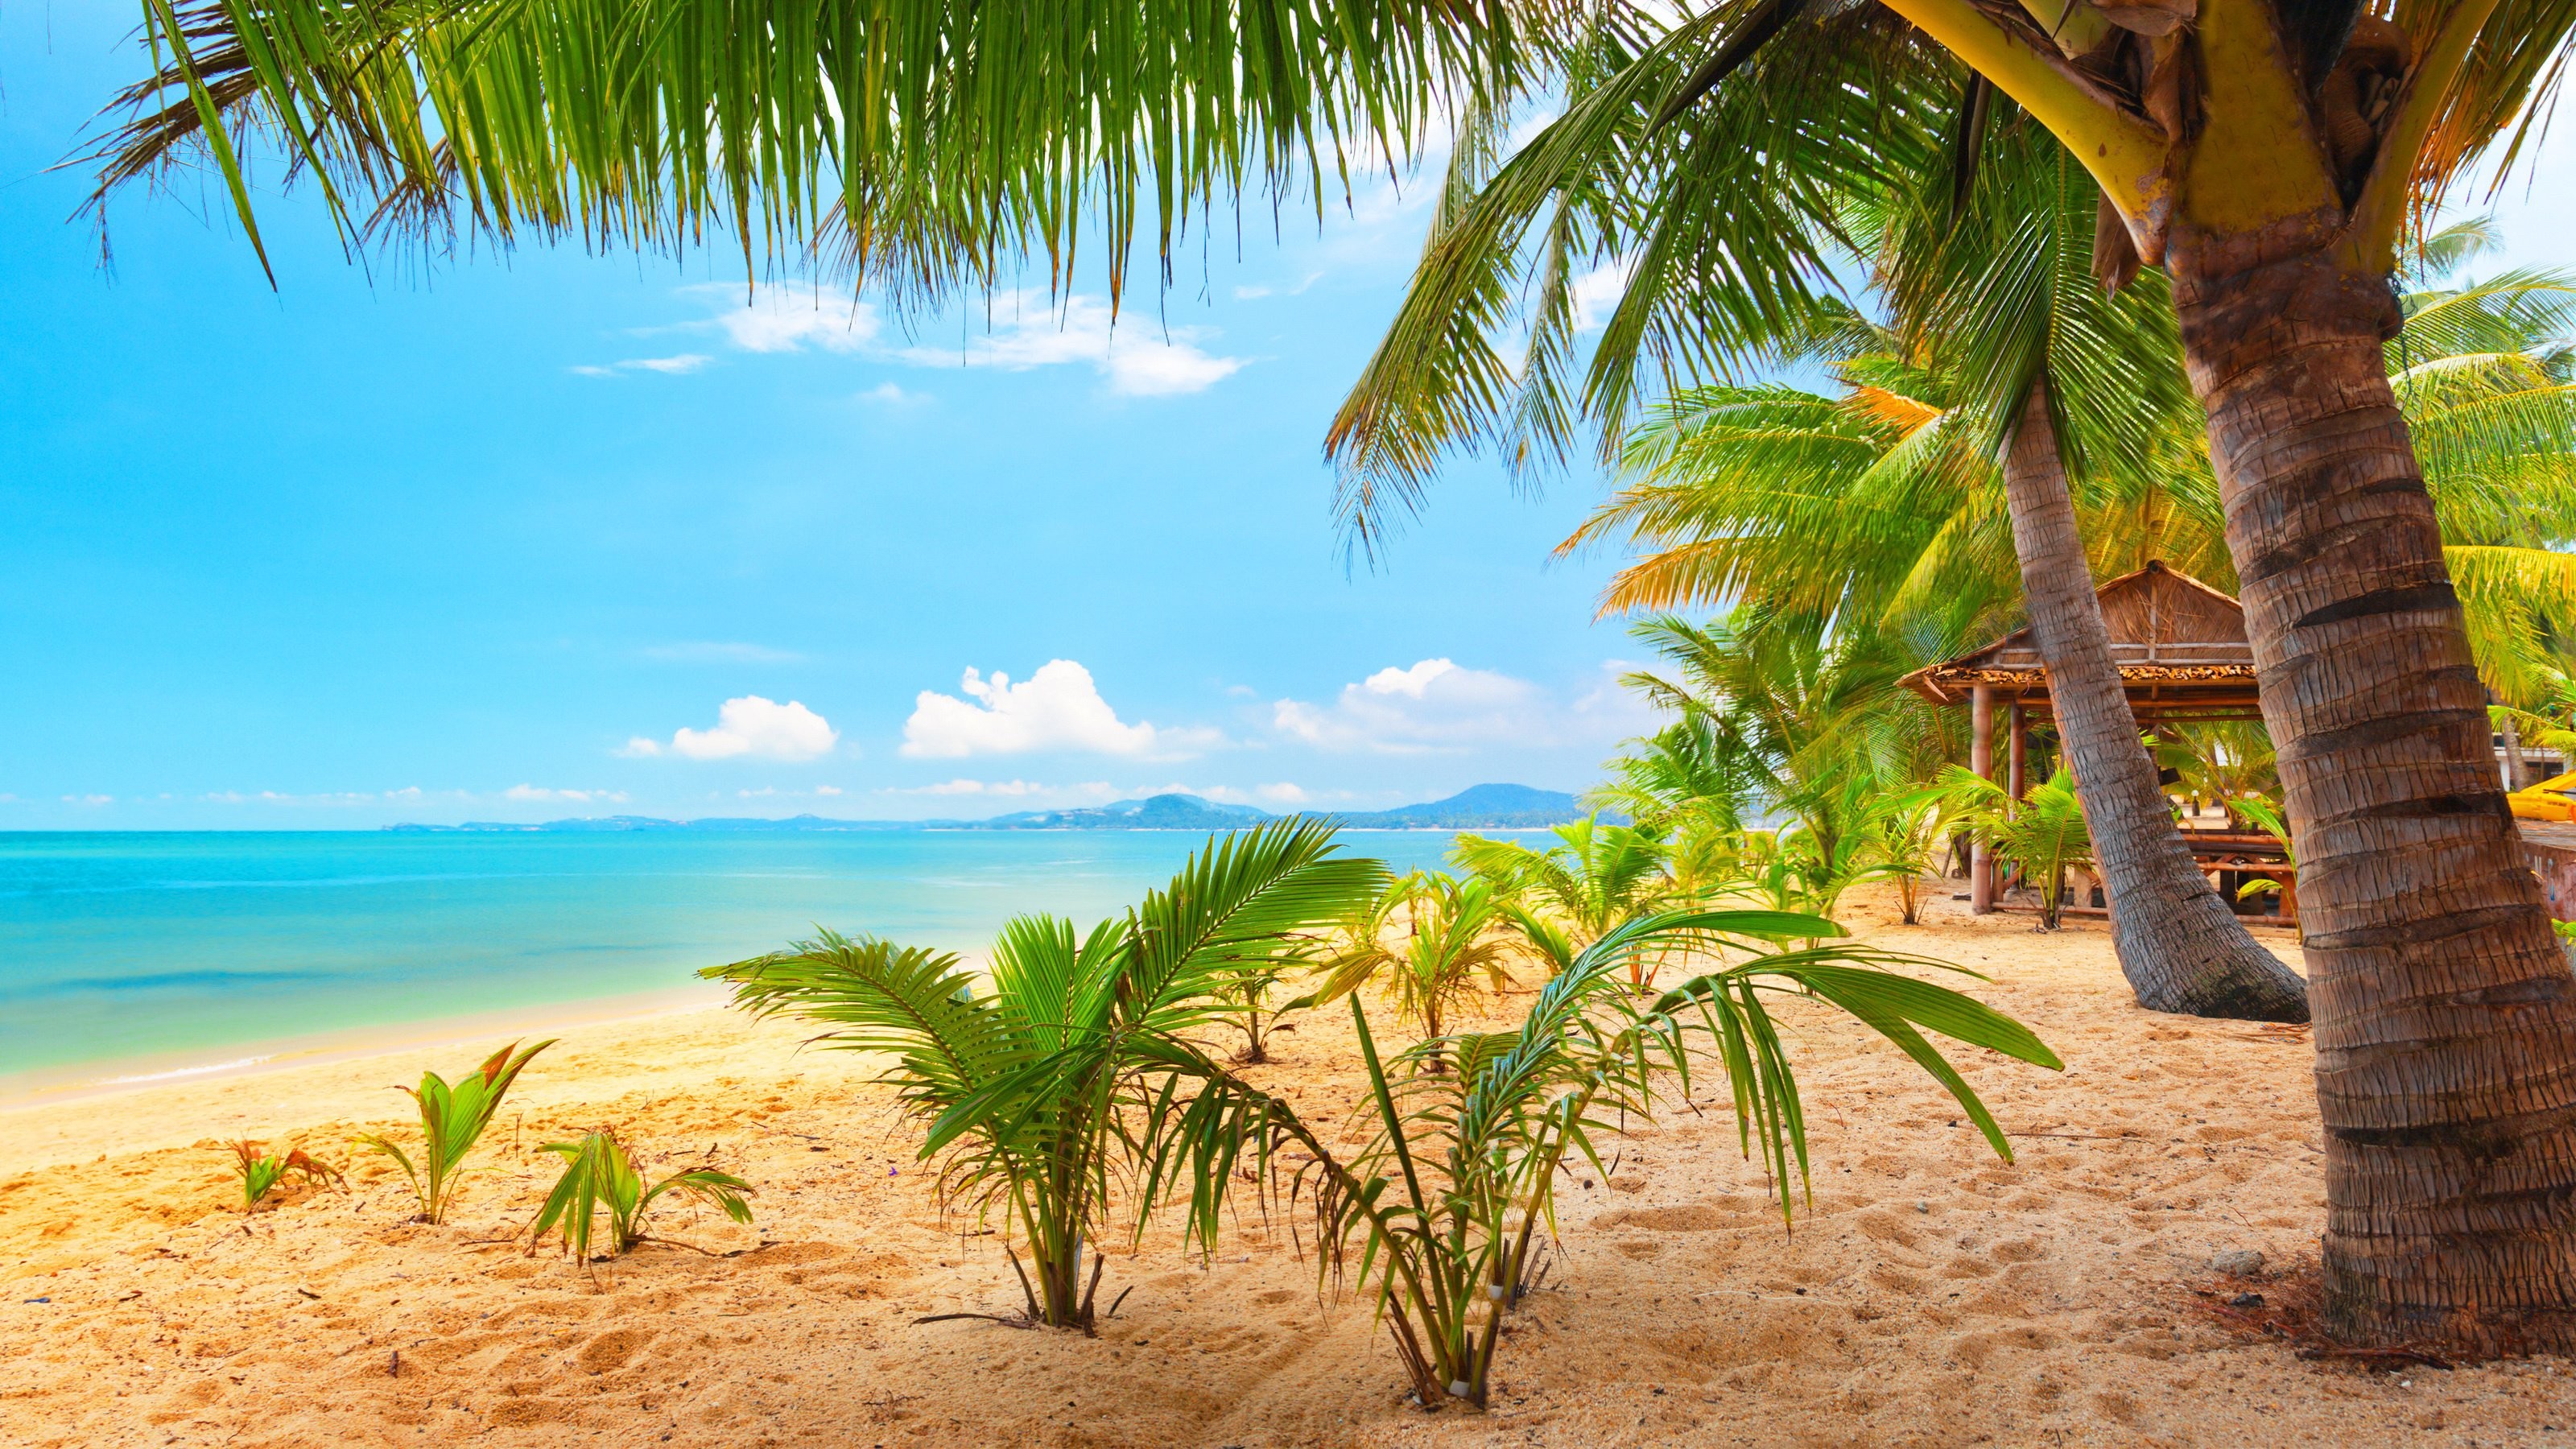 3200x1800 Sand sea palm trees summer beach sun wallpaper |  | 429431 |  WallpaperUP